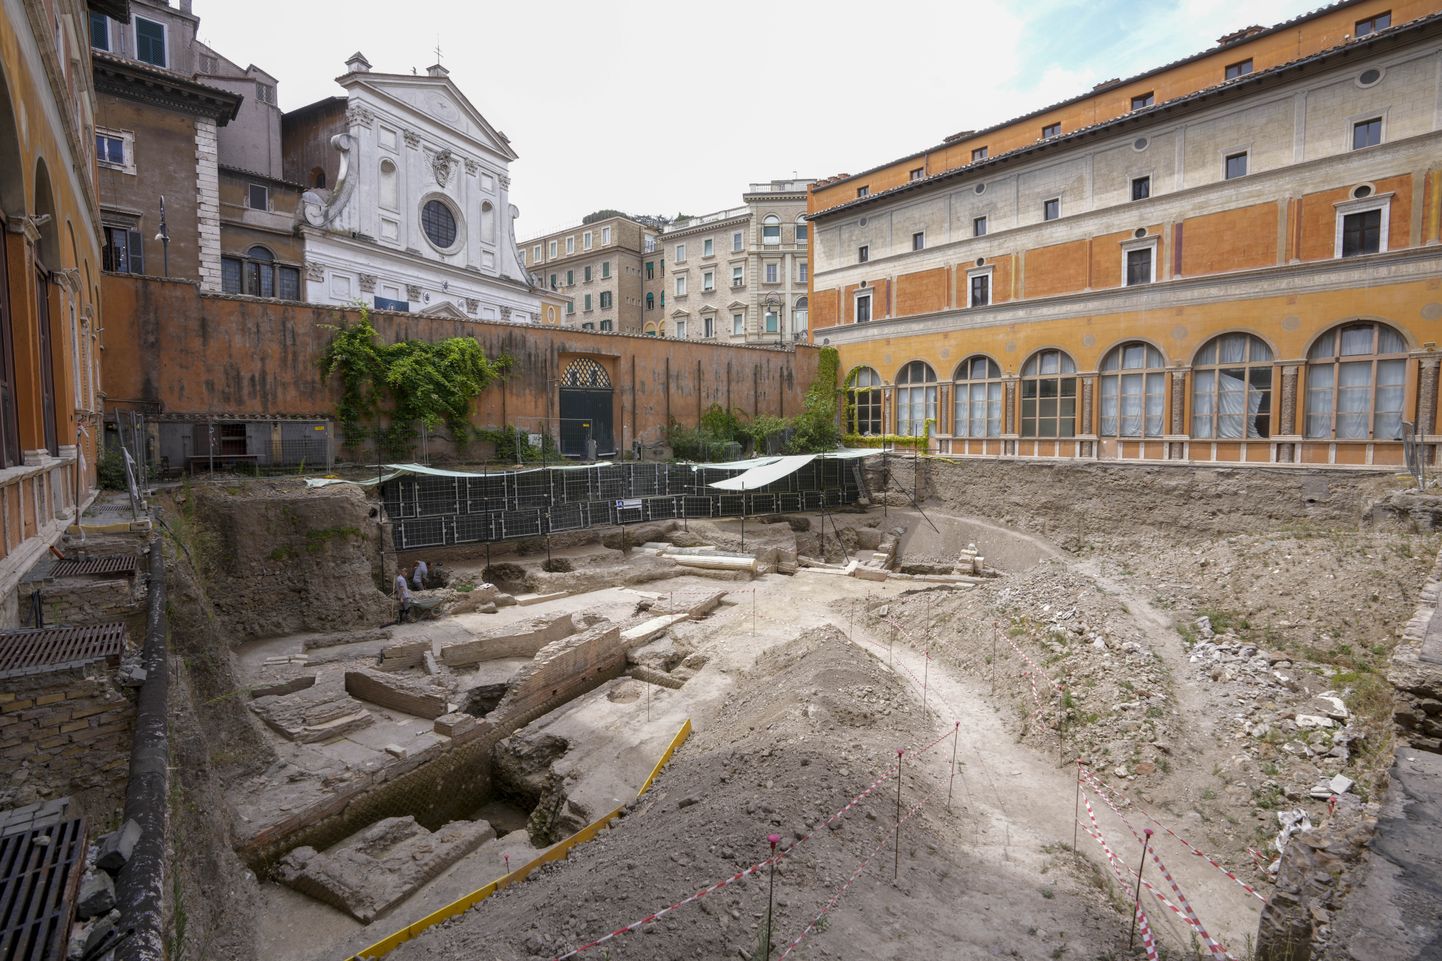 Itaalia arheoloogid leidsid Roomas keiser Nero erateatri, mis pärineb 1. sajandist pKr